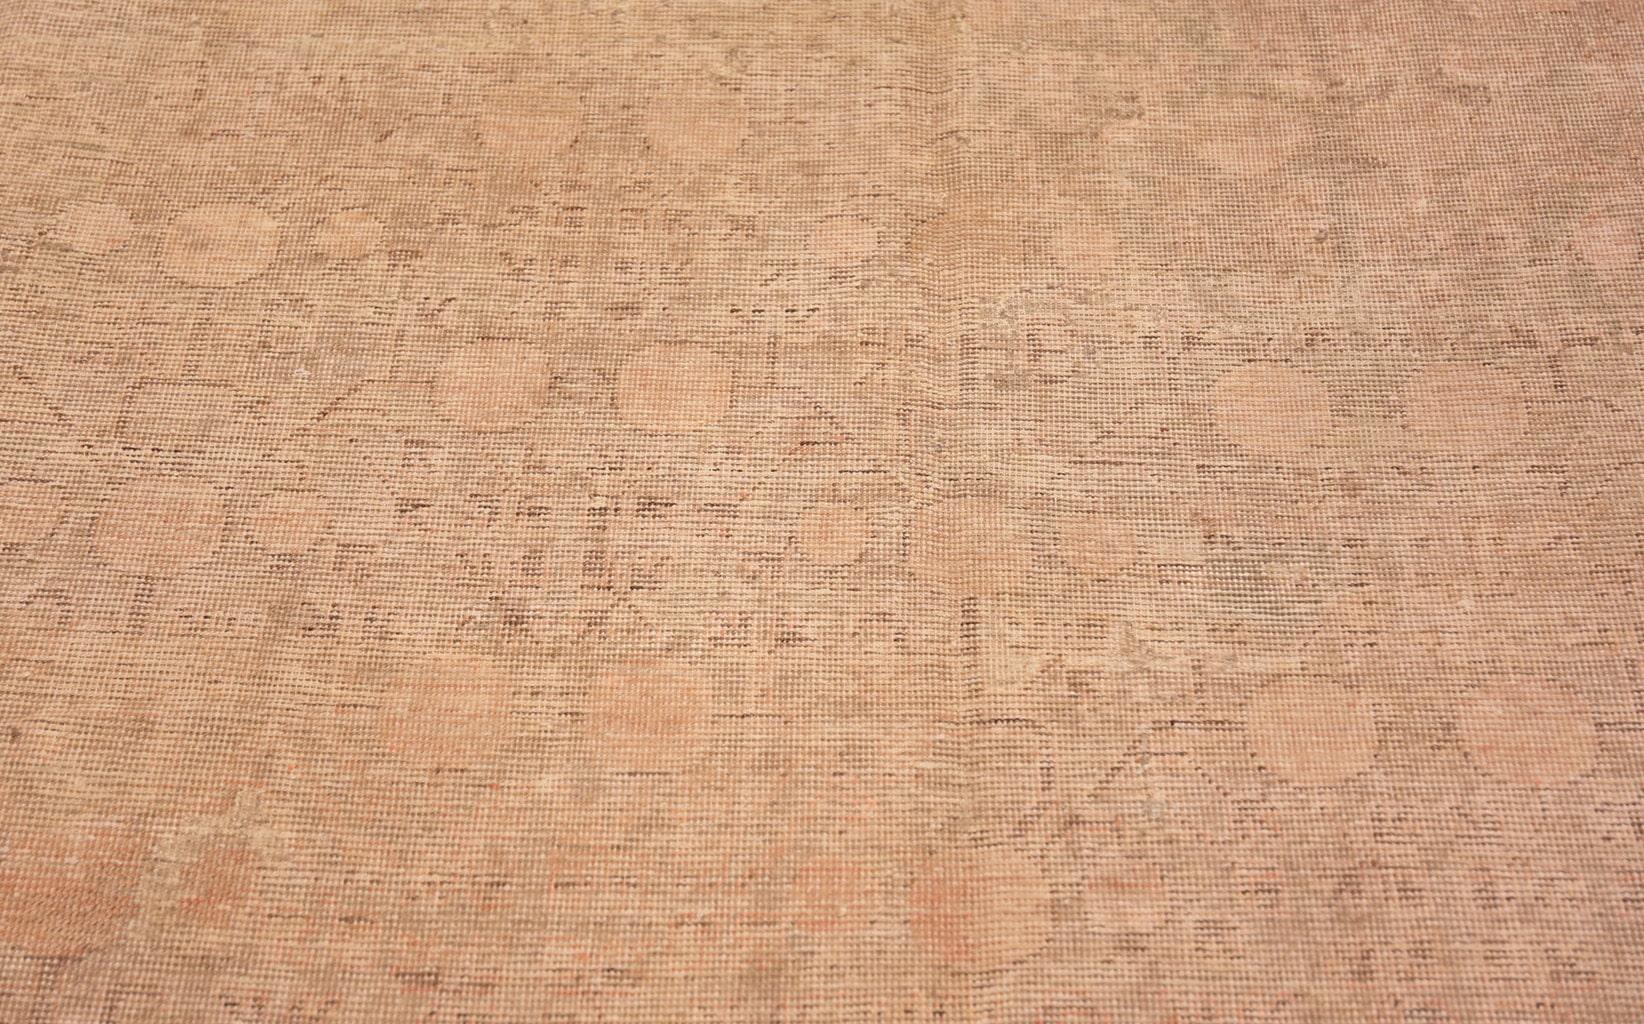 Wunderschön dekorativer antiker Khotan-Teppich, Herkunftsland: Ostturkestan, CIRCA Datum: Anfang 20. Jahrhundert. Größe: 2,44 m x 4,88 m (8 Fuß x 16 Fuß)

